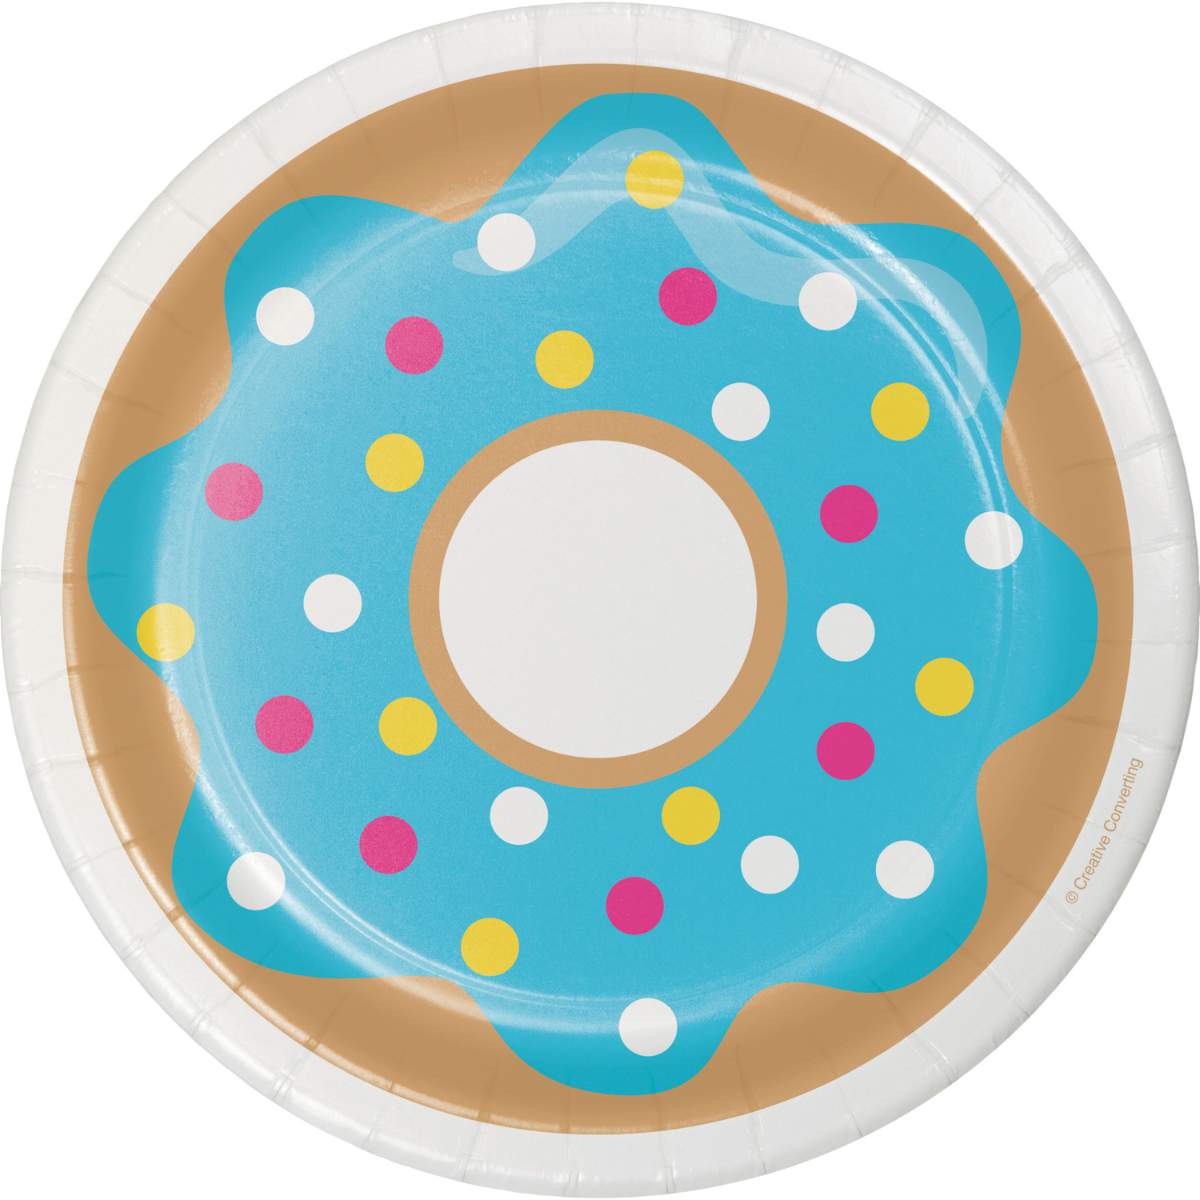 Plato fiesta Donut Time (17.7cm) x 8 UND